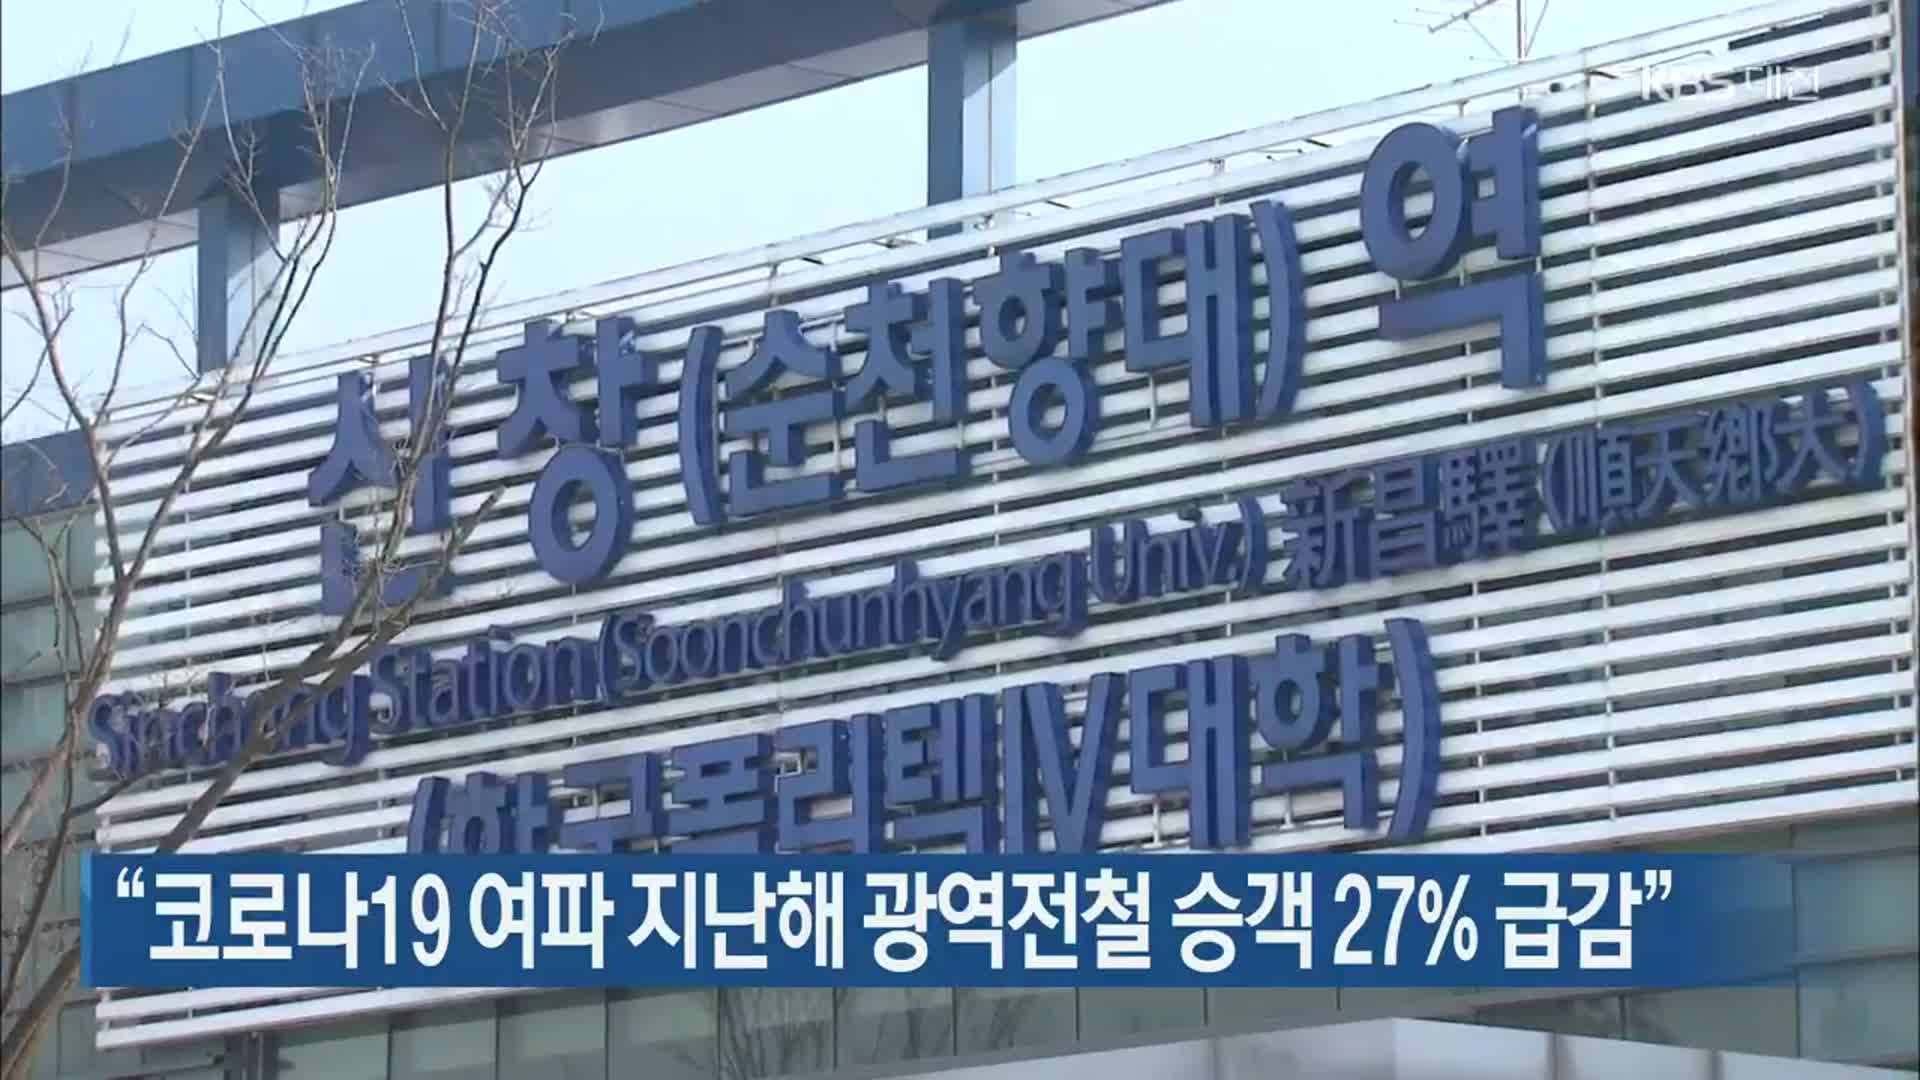 “코로나19 여파 지난해 광역전철 승객 27% 급감”